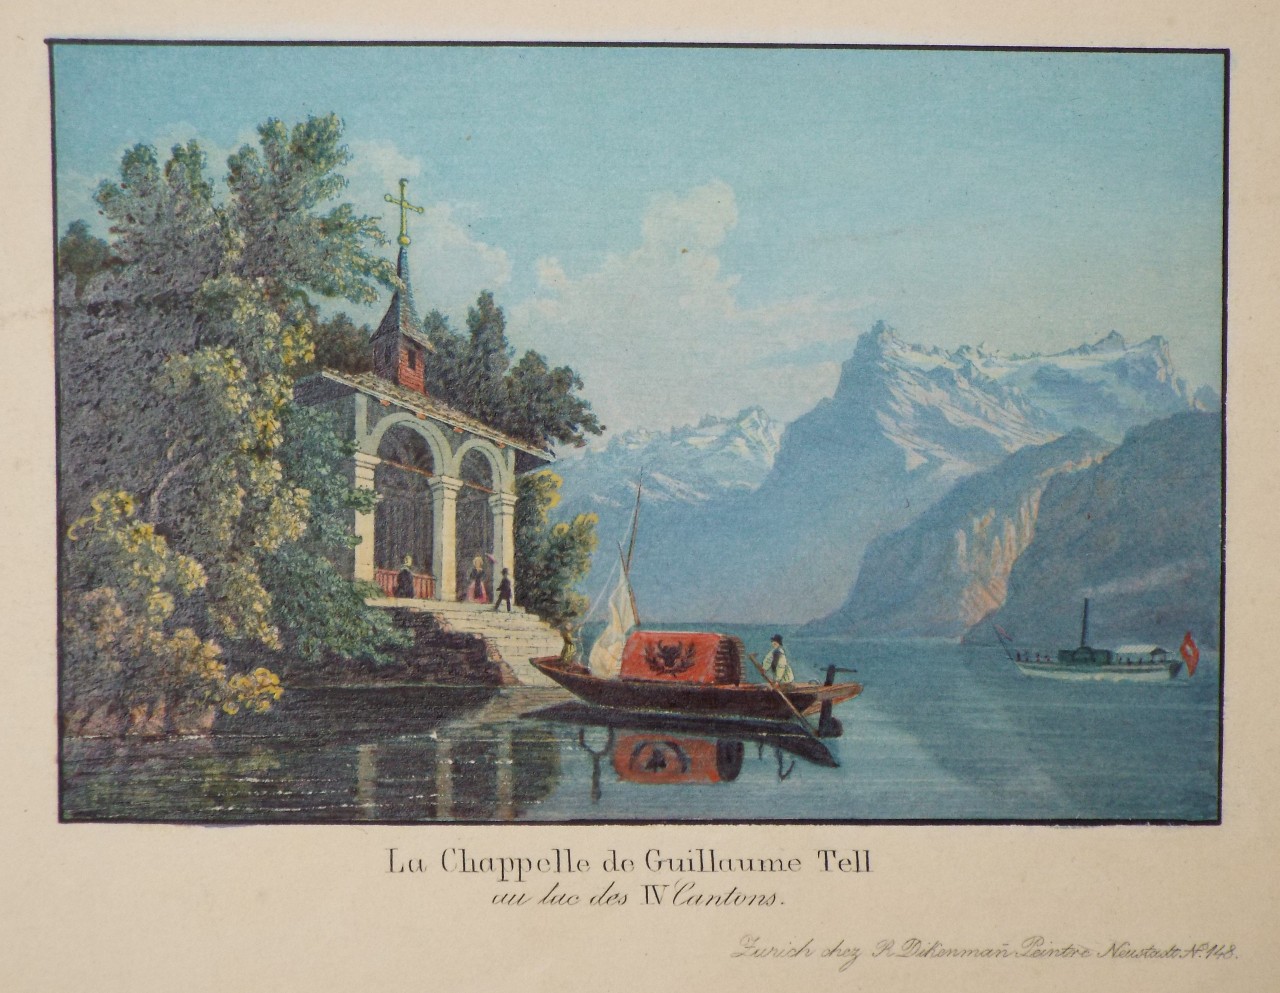 Aquatint - La Chappelle de Guillaume Tell au lac des IV Cantons.